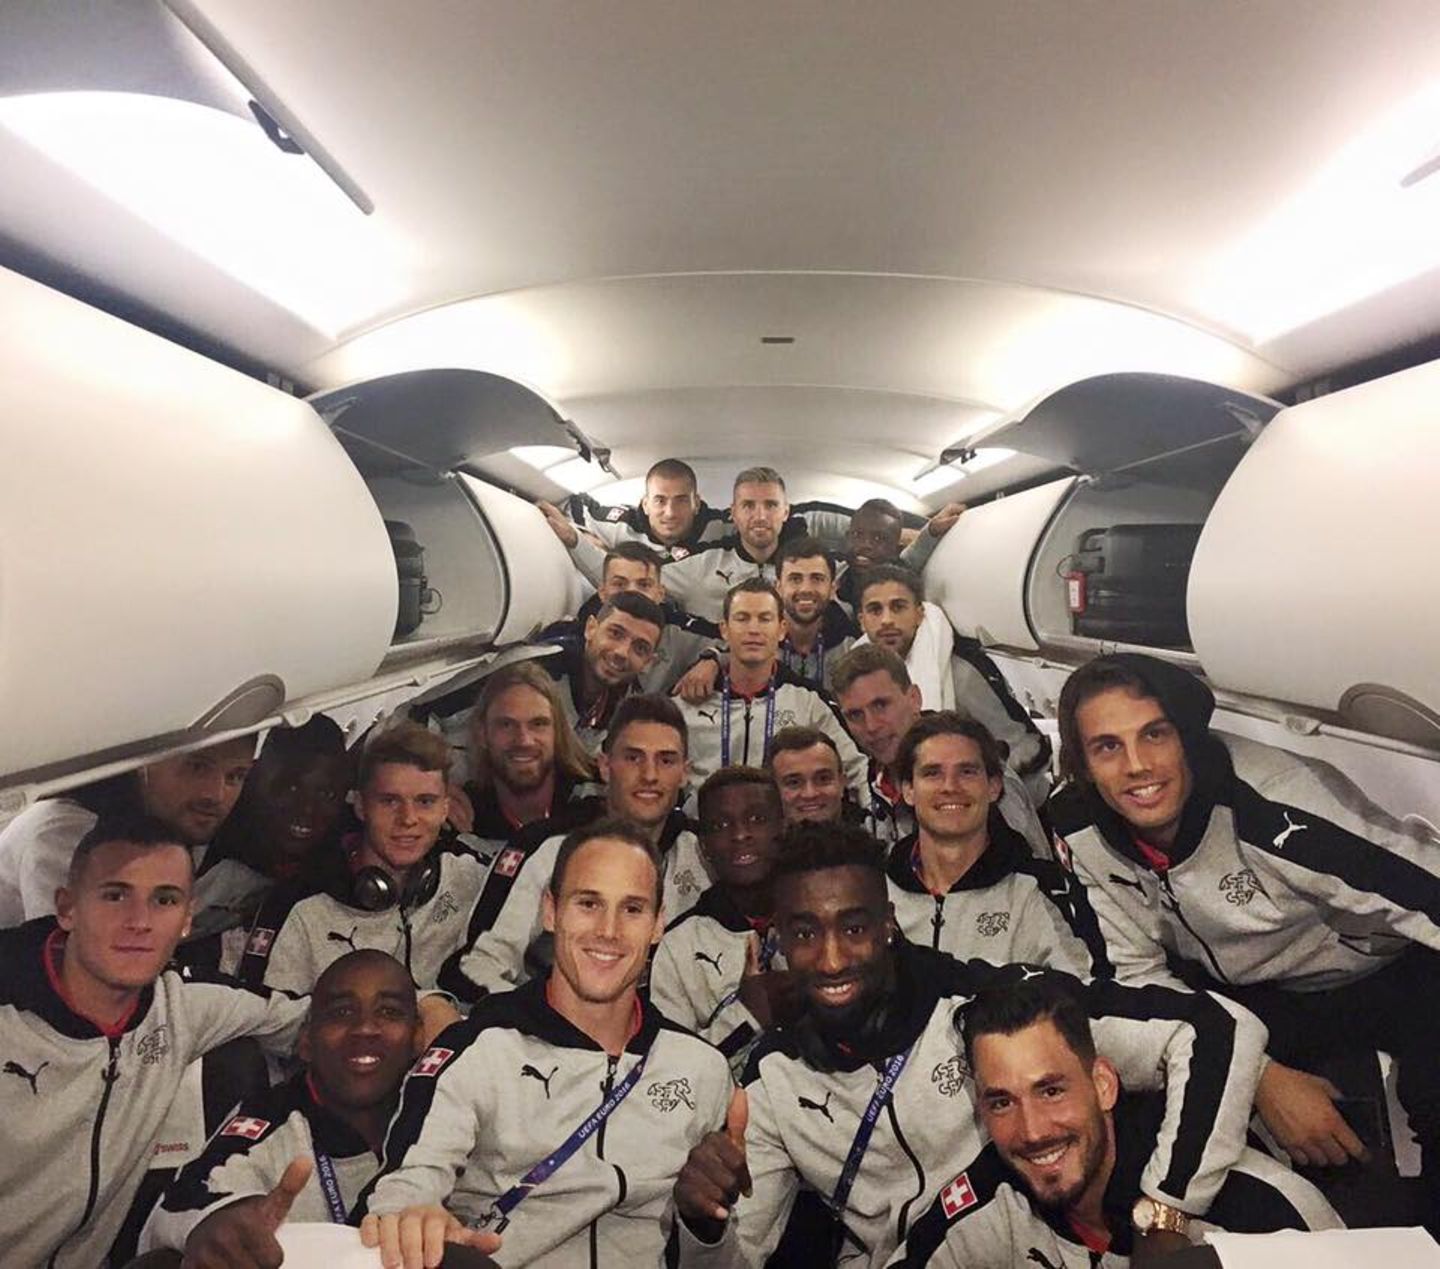 Das Schweizer Team feiert den Einzug ins Achtelfinale und teilt seine Freude mit einem Gruppen-Selfie im Flieger.